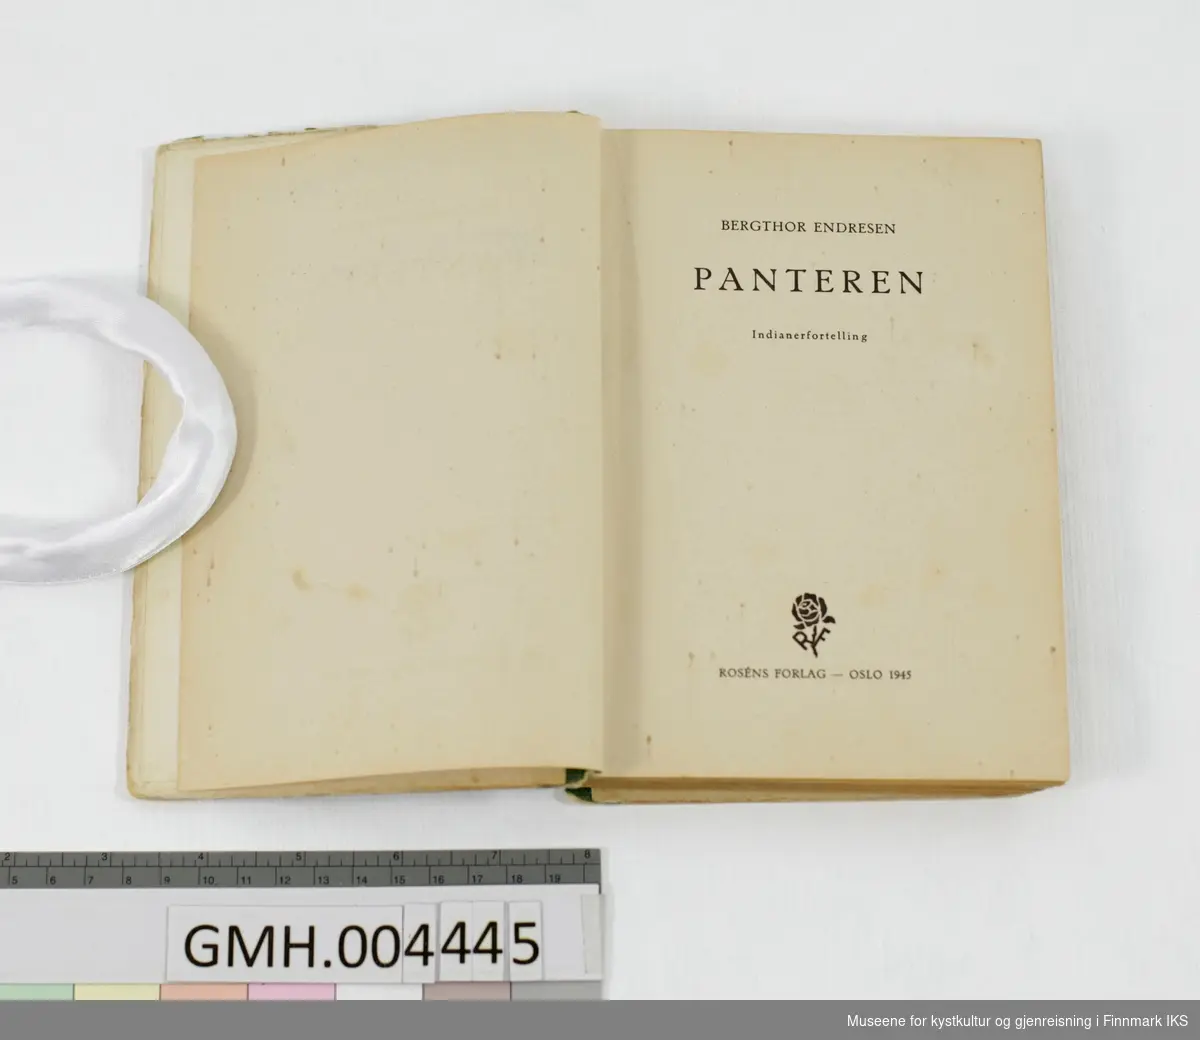 Bok: Bergthor Endresen. "Panteren" Indianerfortelling for gutter. Rosén, Oslo, 1945.